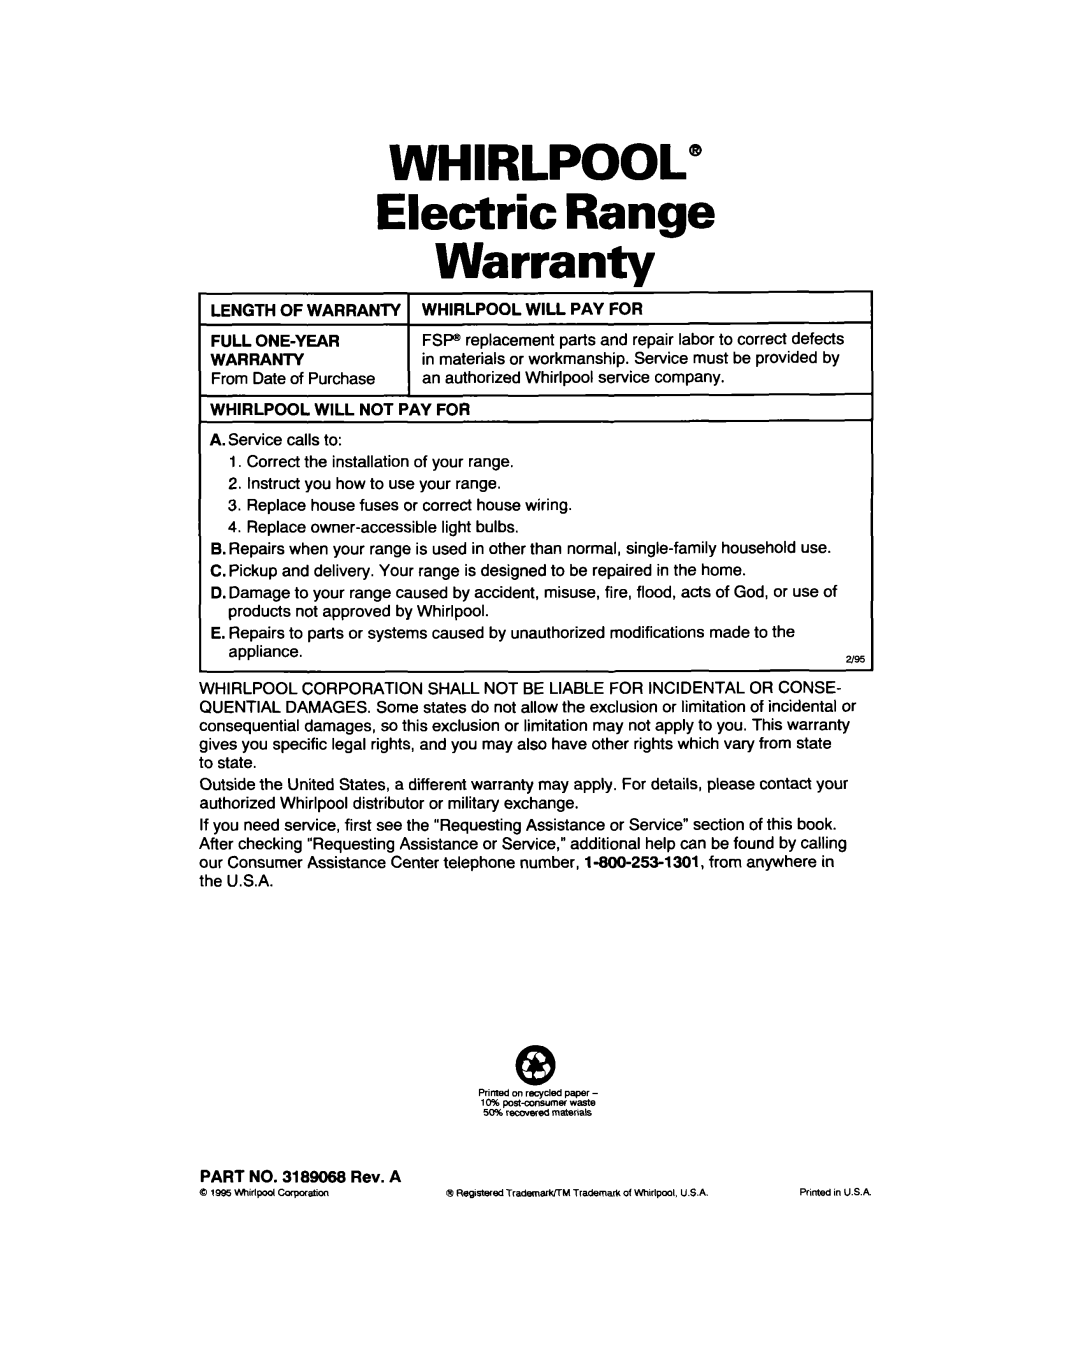 Whirlpool RF310PXD warranty WHIRLPOOL” Electric Range Warranty 